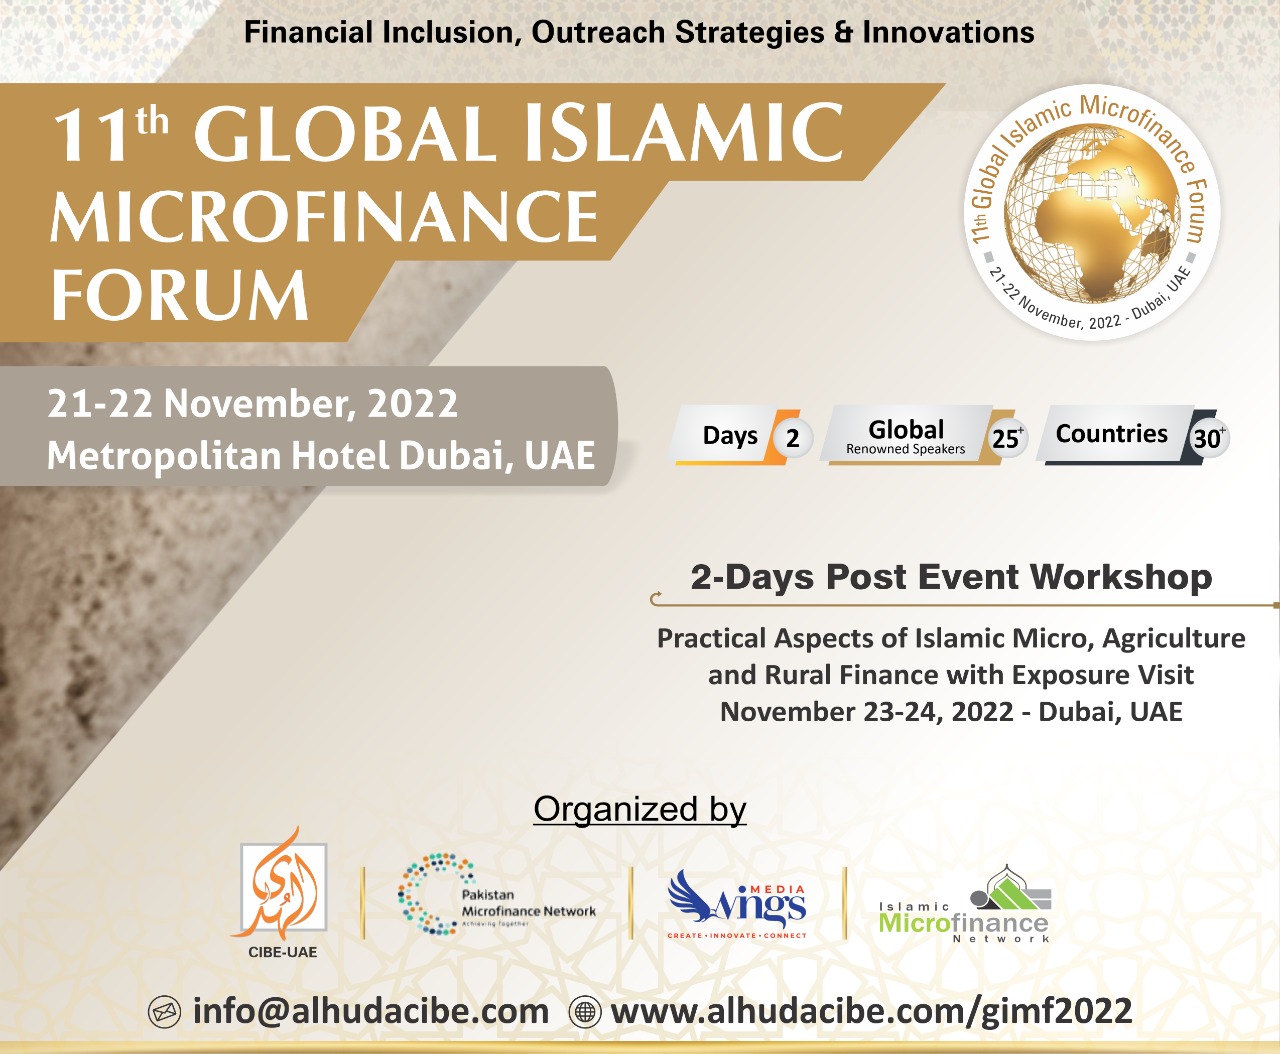 11th Global Islamic Microfinance Forum to be held in U.A.E.